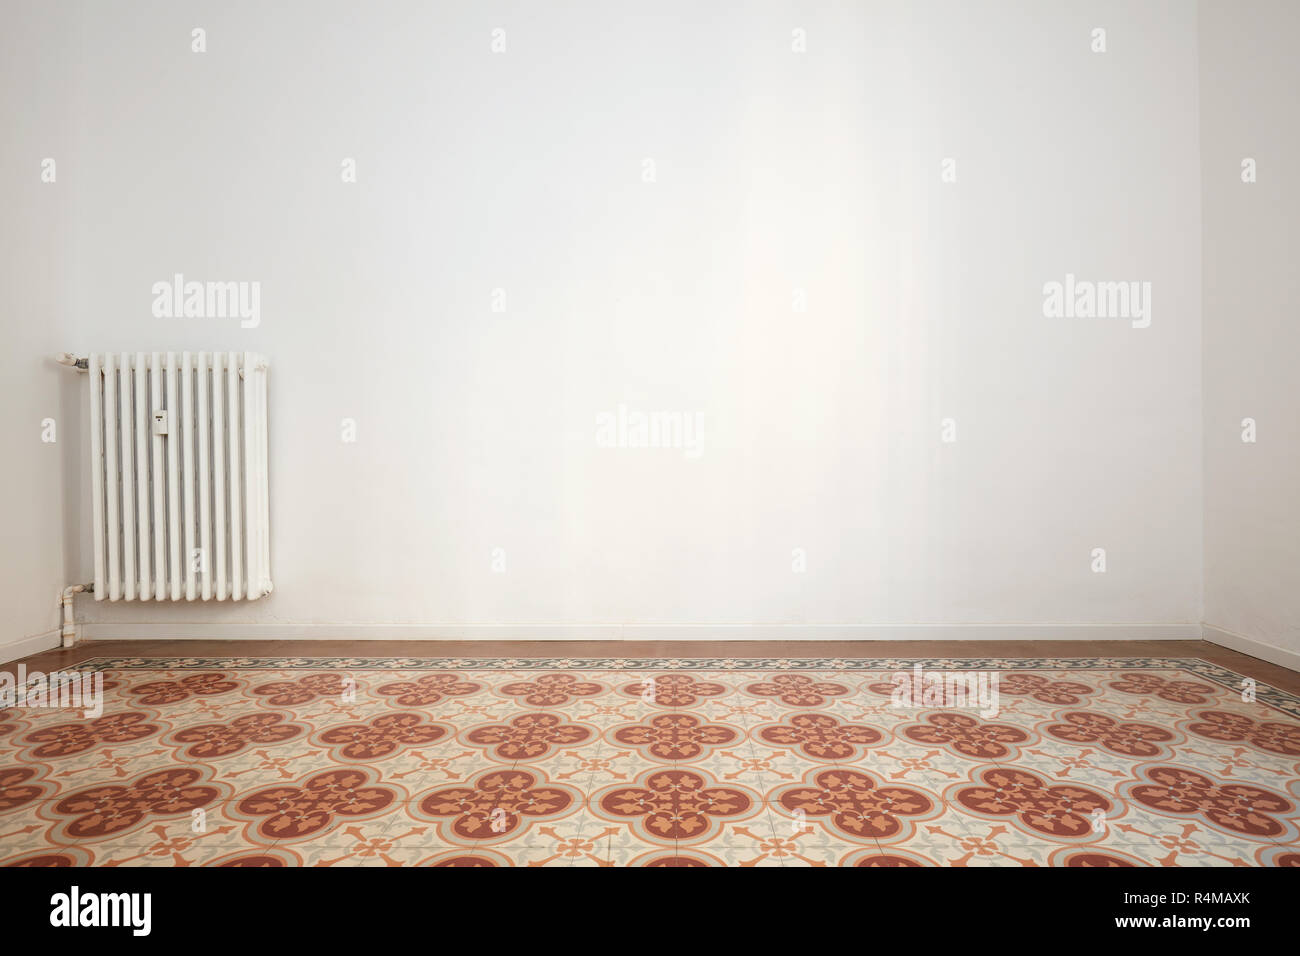 Salle vide avec des murs blancs, carrelage avec décoration florale Banque D'Images